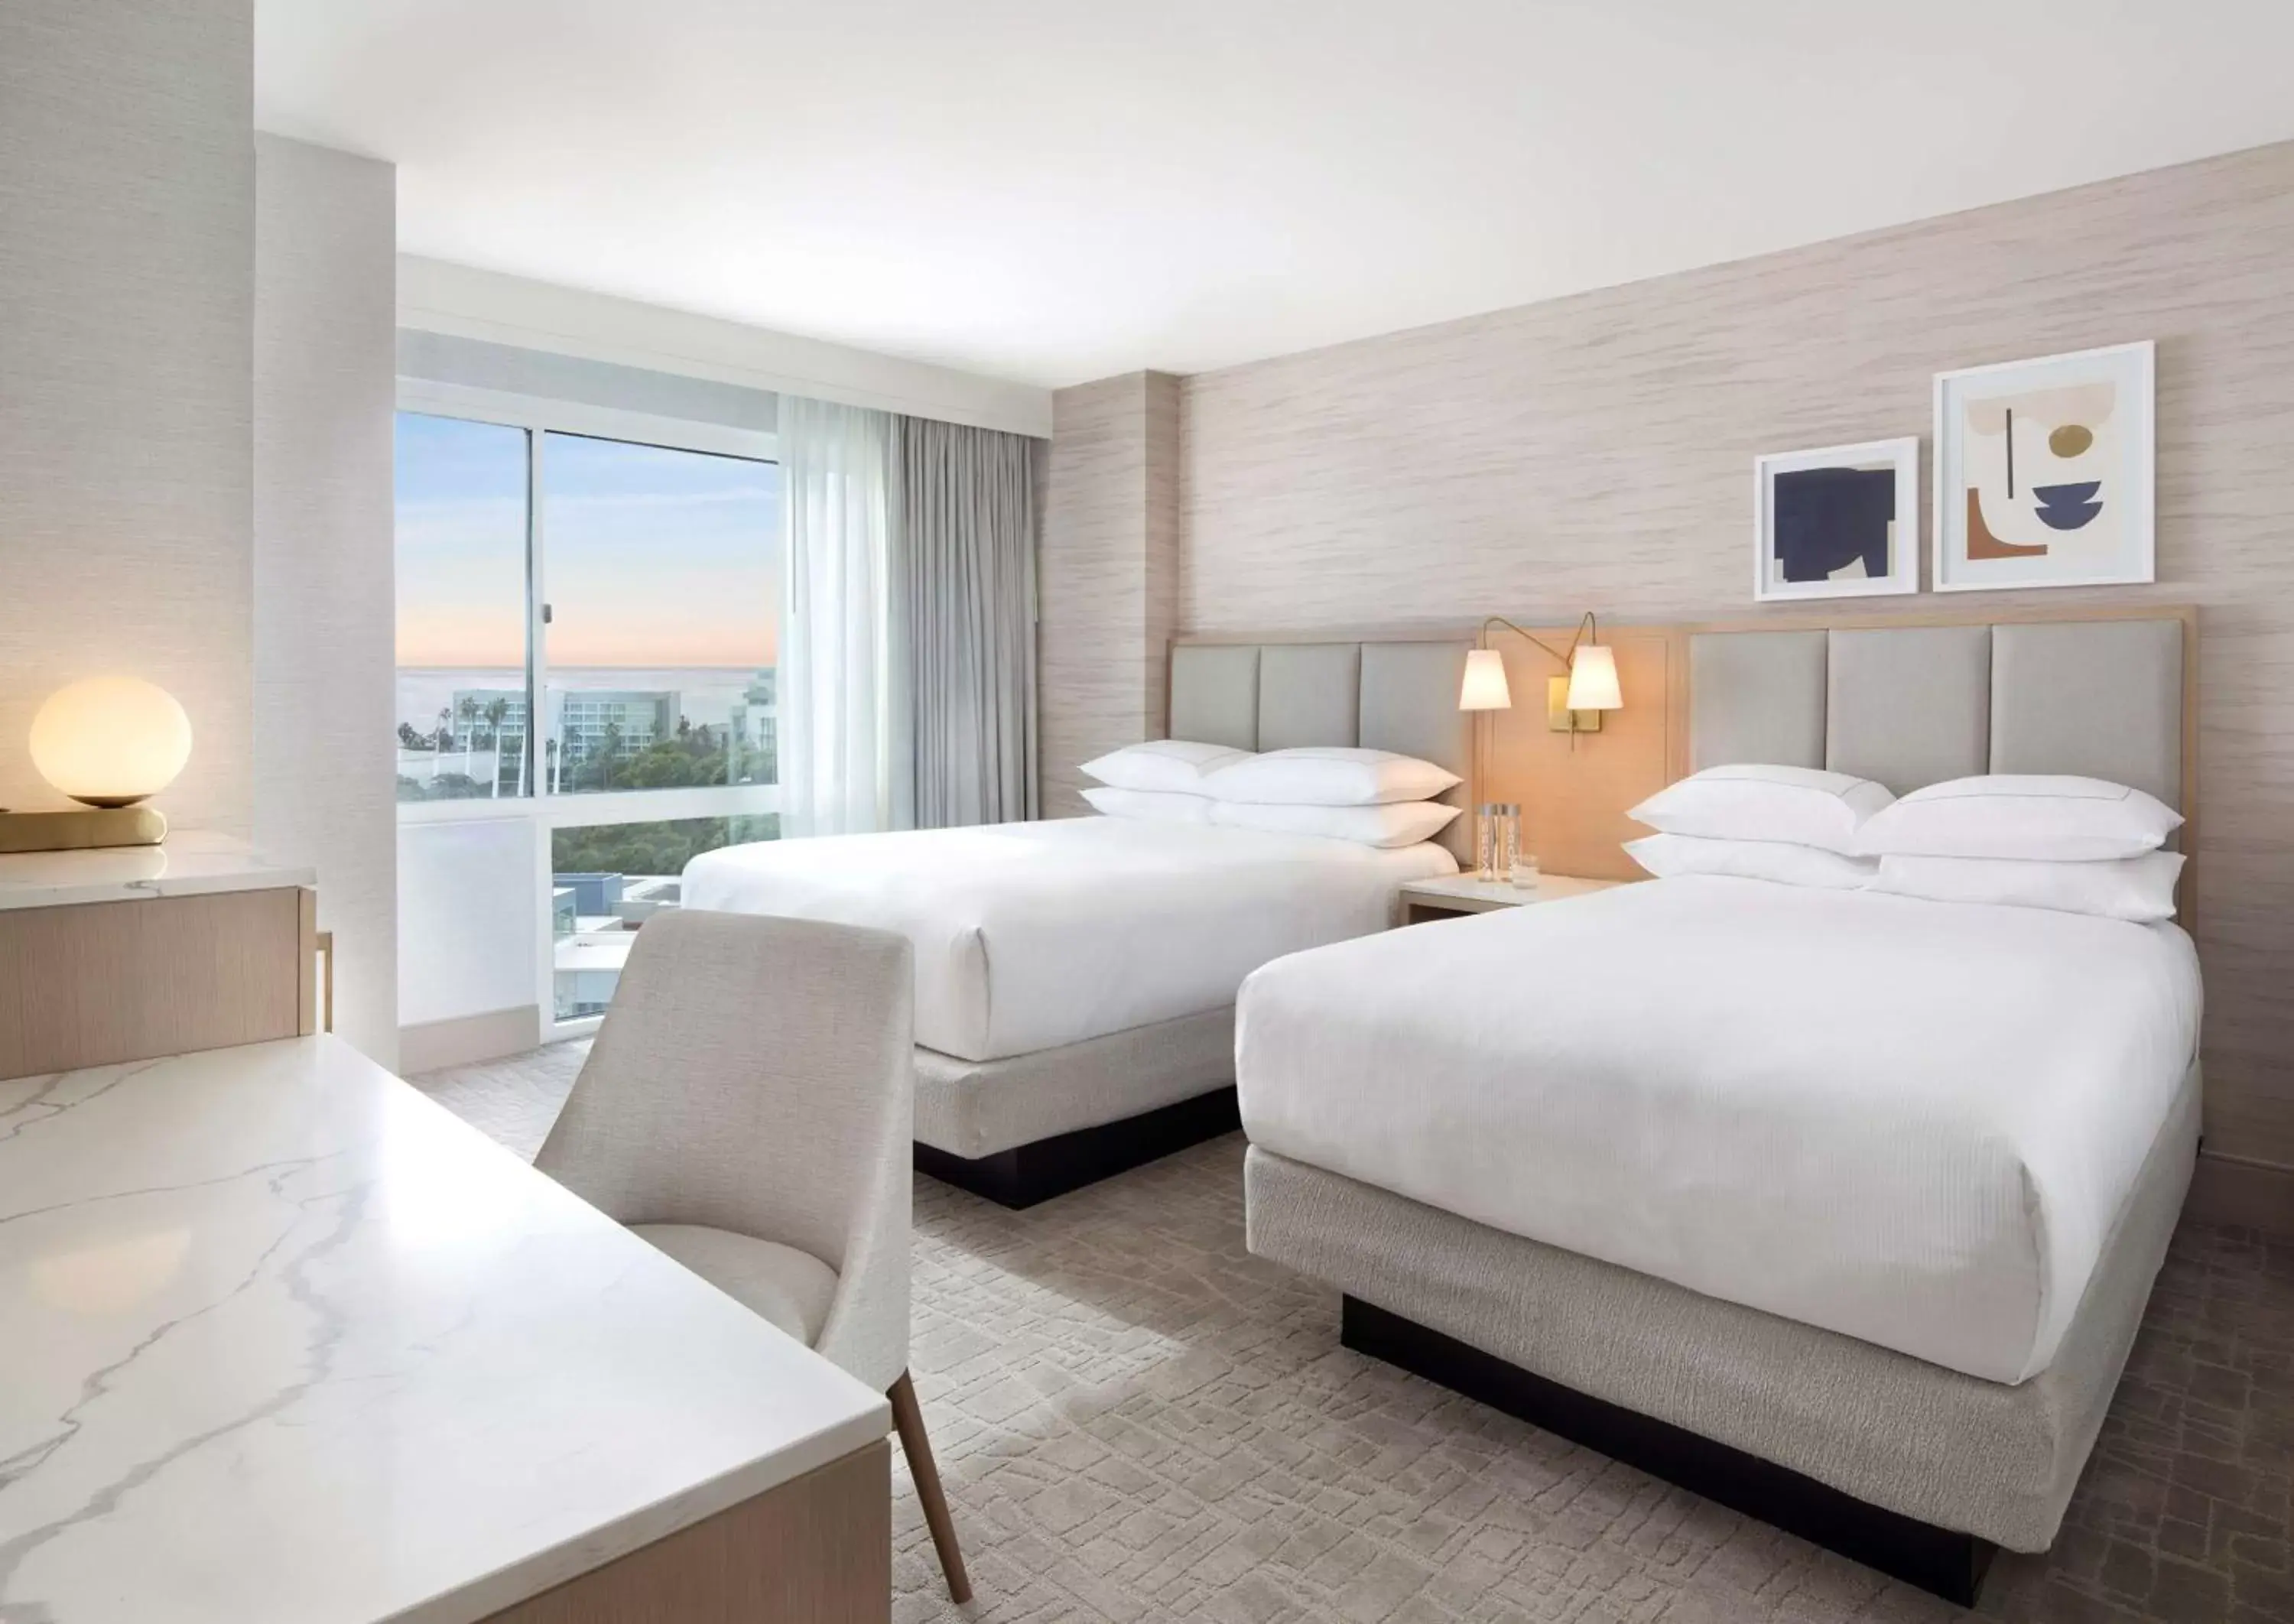 Bedroom in Hilton Santa Monica